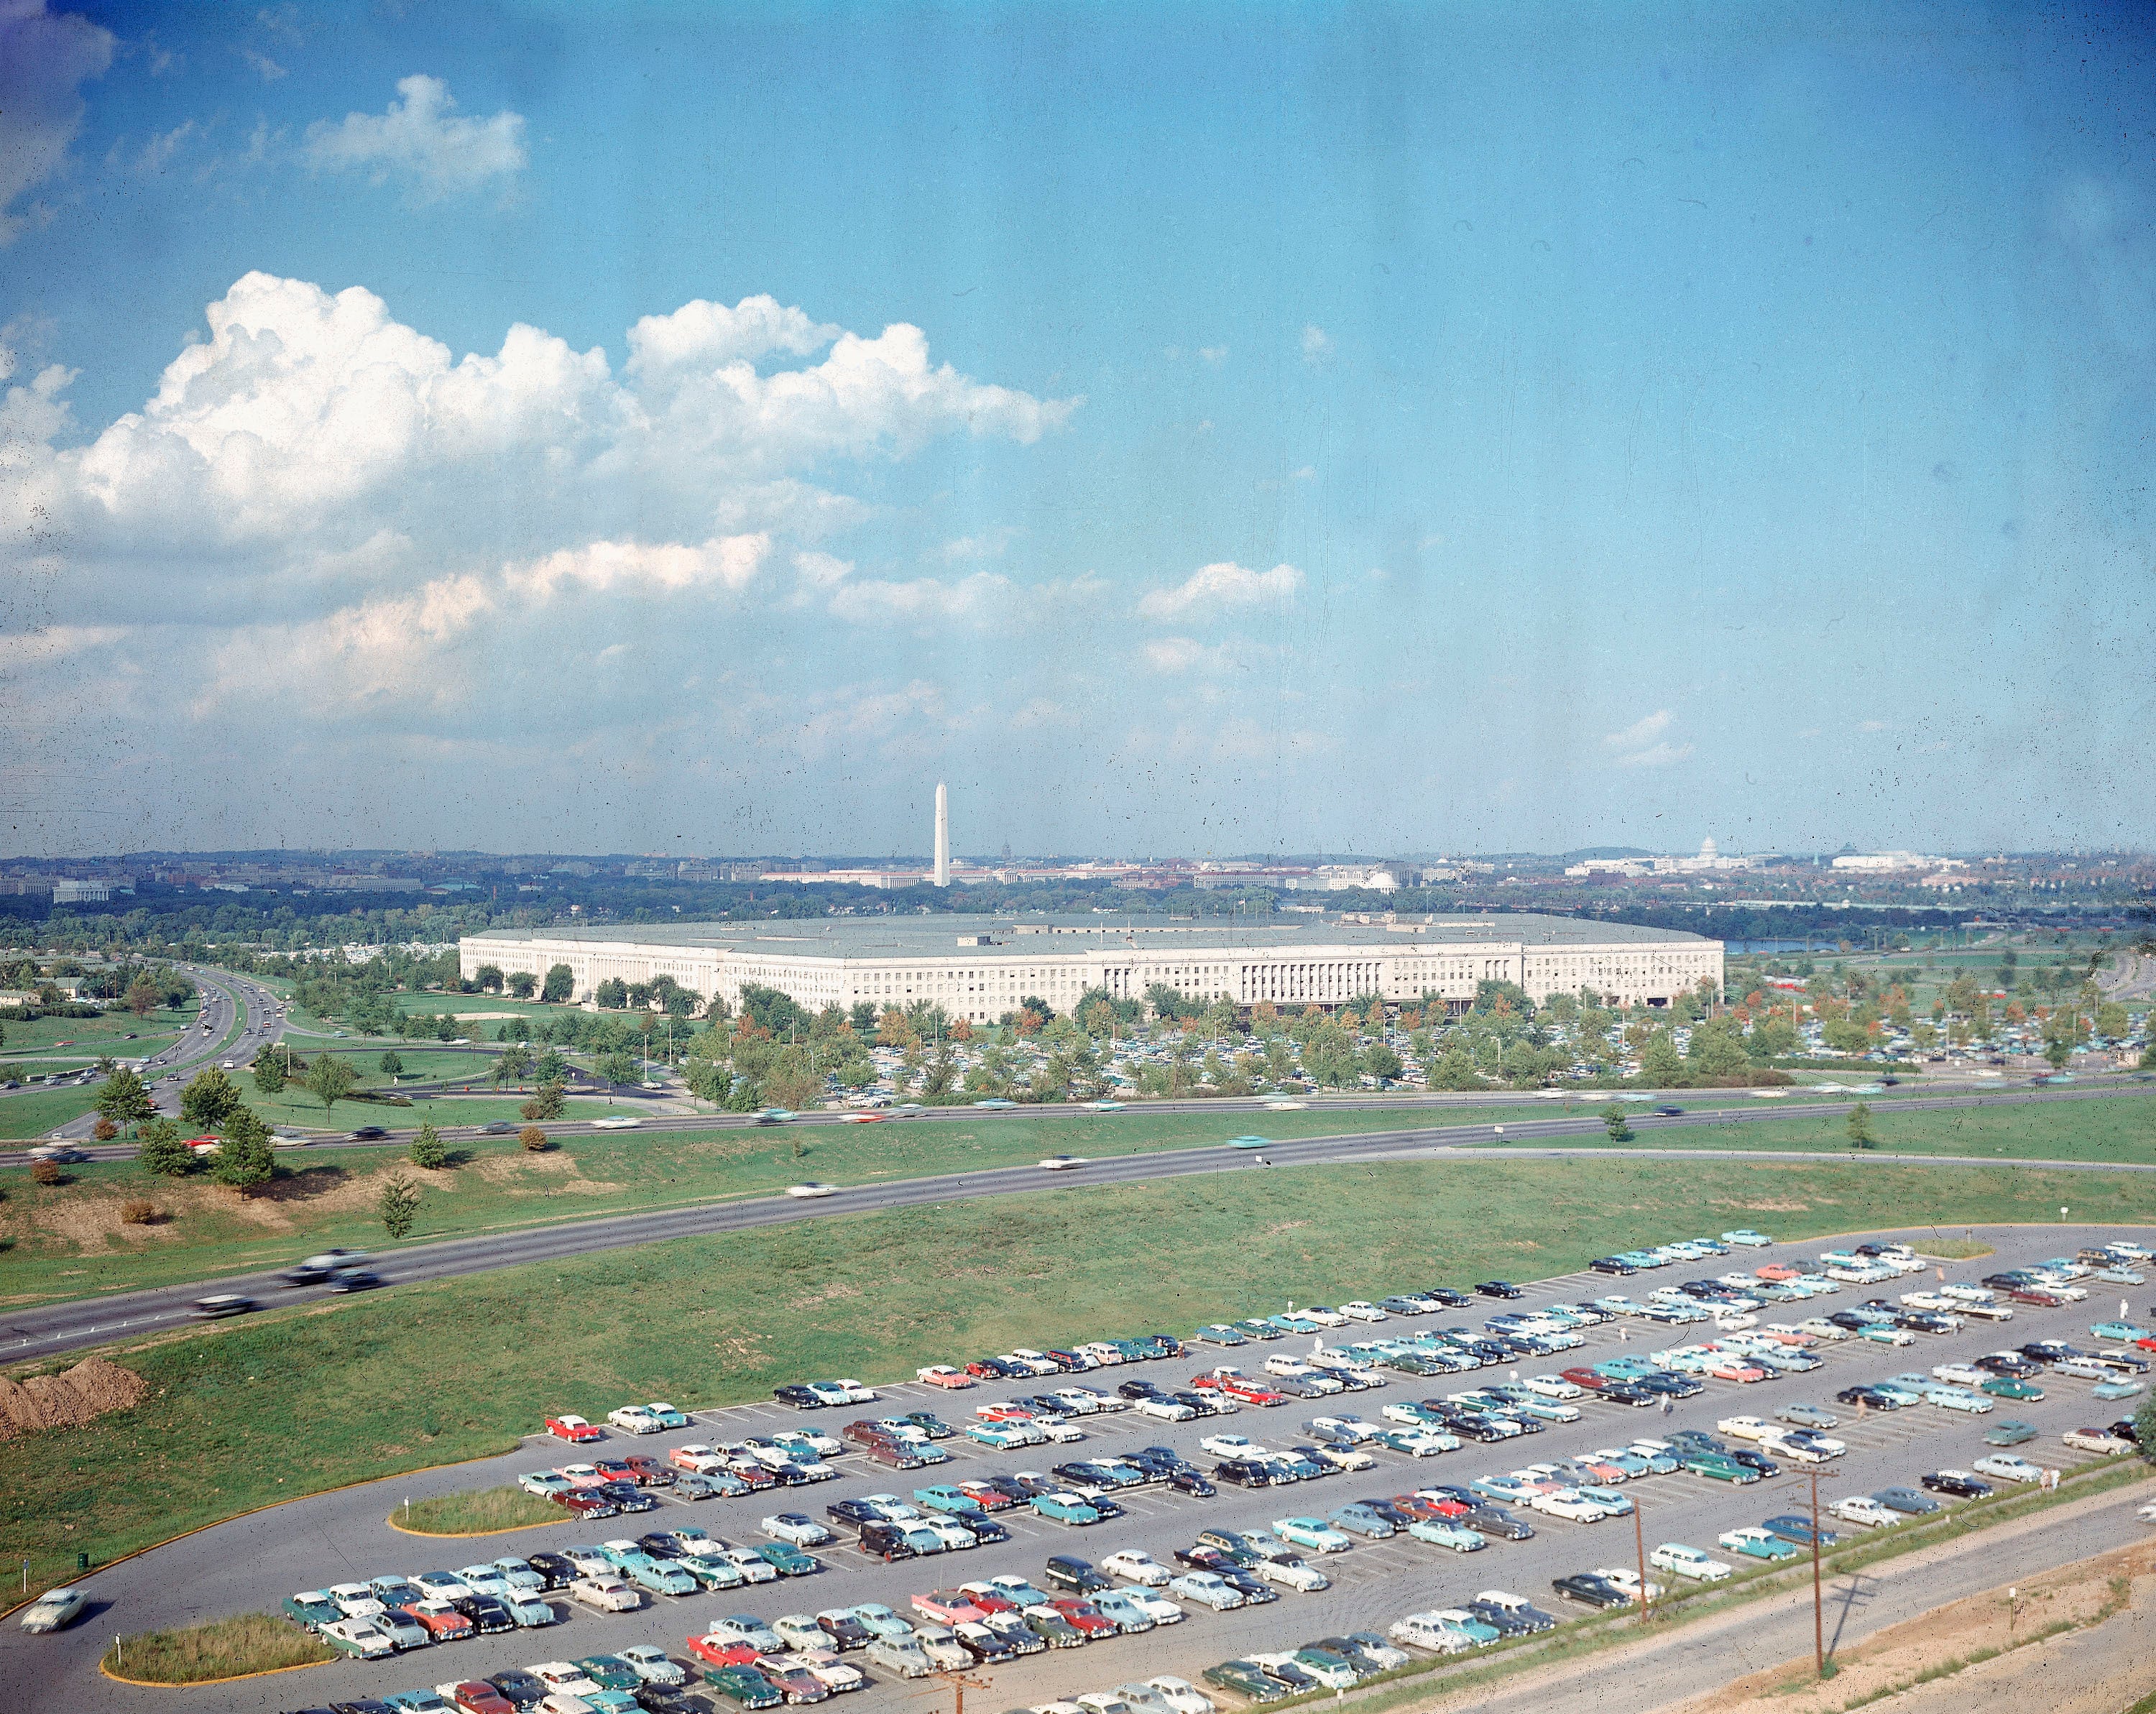 ARCHIVO - En esta fotografía de archivo sin fecha se ve al Pentágono, sede del Departamento de Defensa de Estados Unidos, con el monumento a Washington al fondo y un gran estacionamiento al frente en Arlington, Virginia.&nbsp;